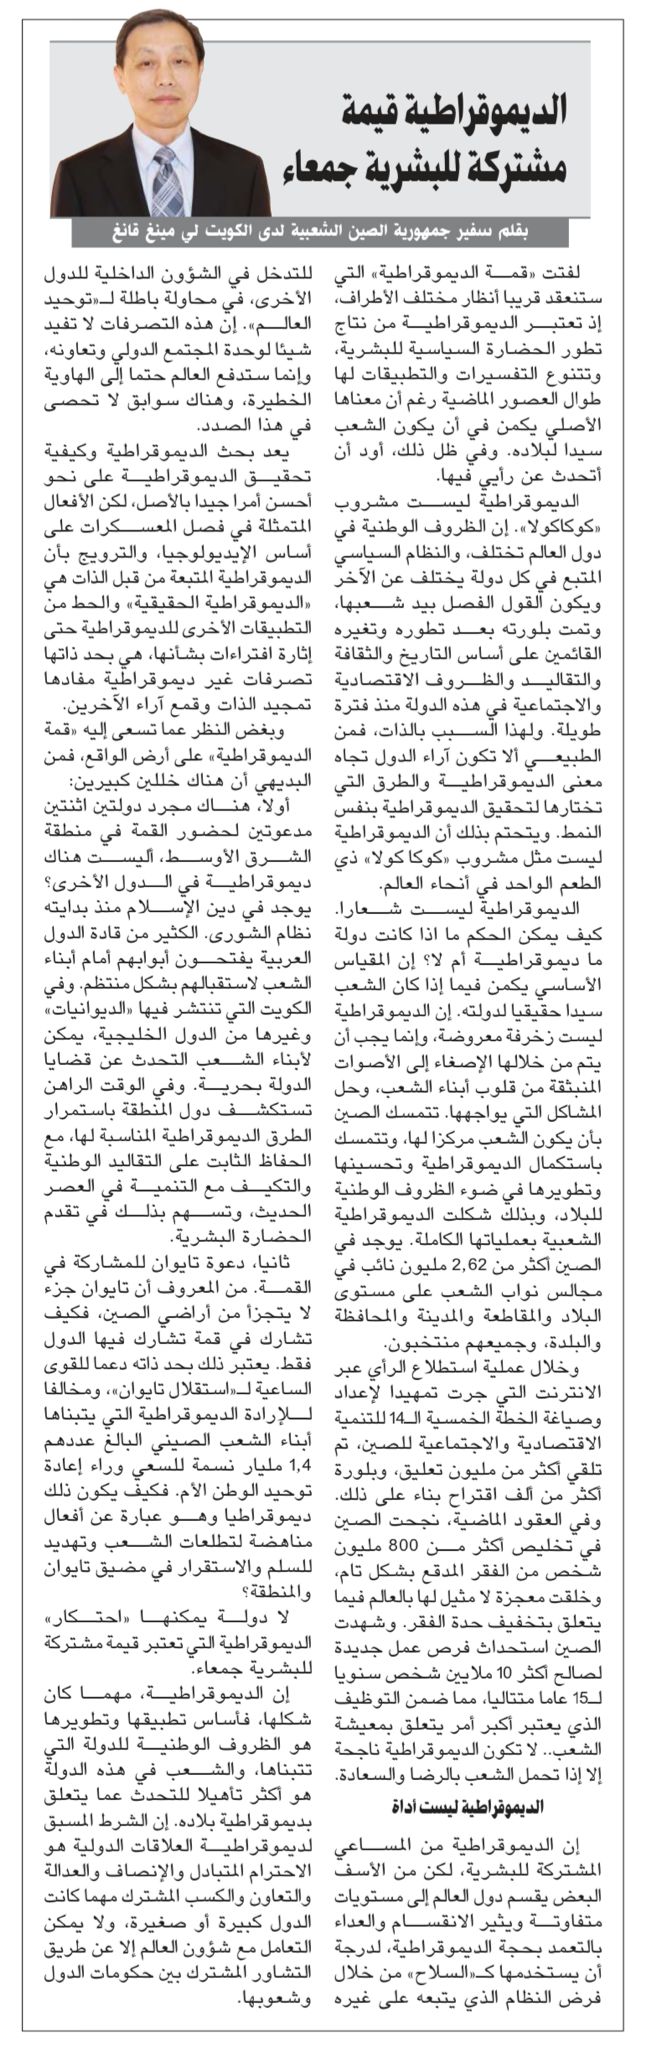 李名刚大使在科威特主流媒体发表署名文章《民主是全人类的共同价值》